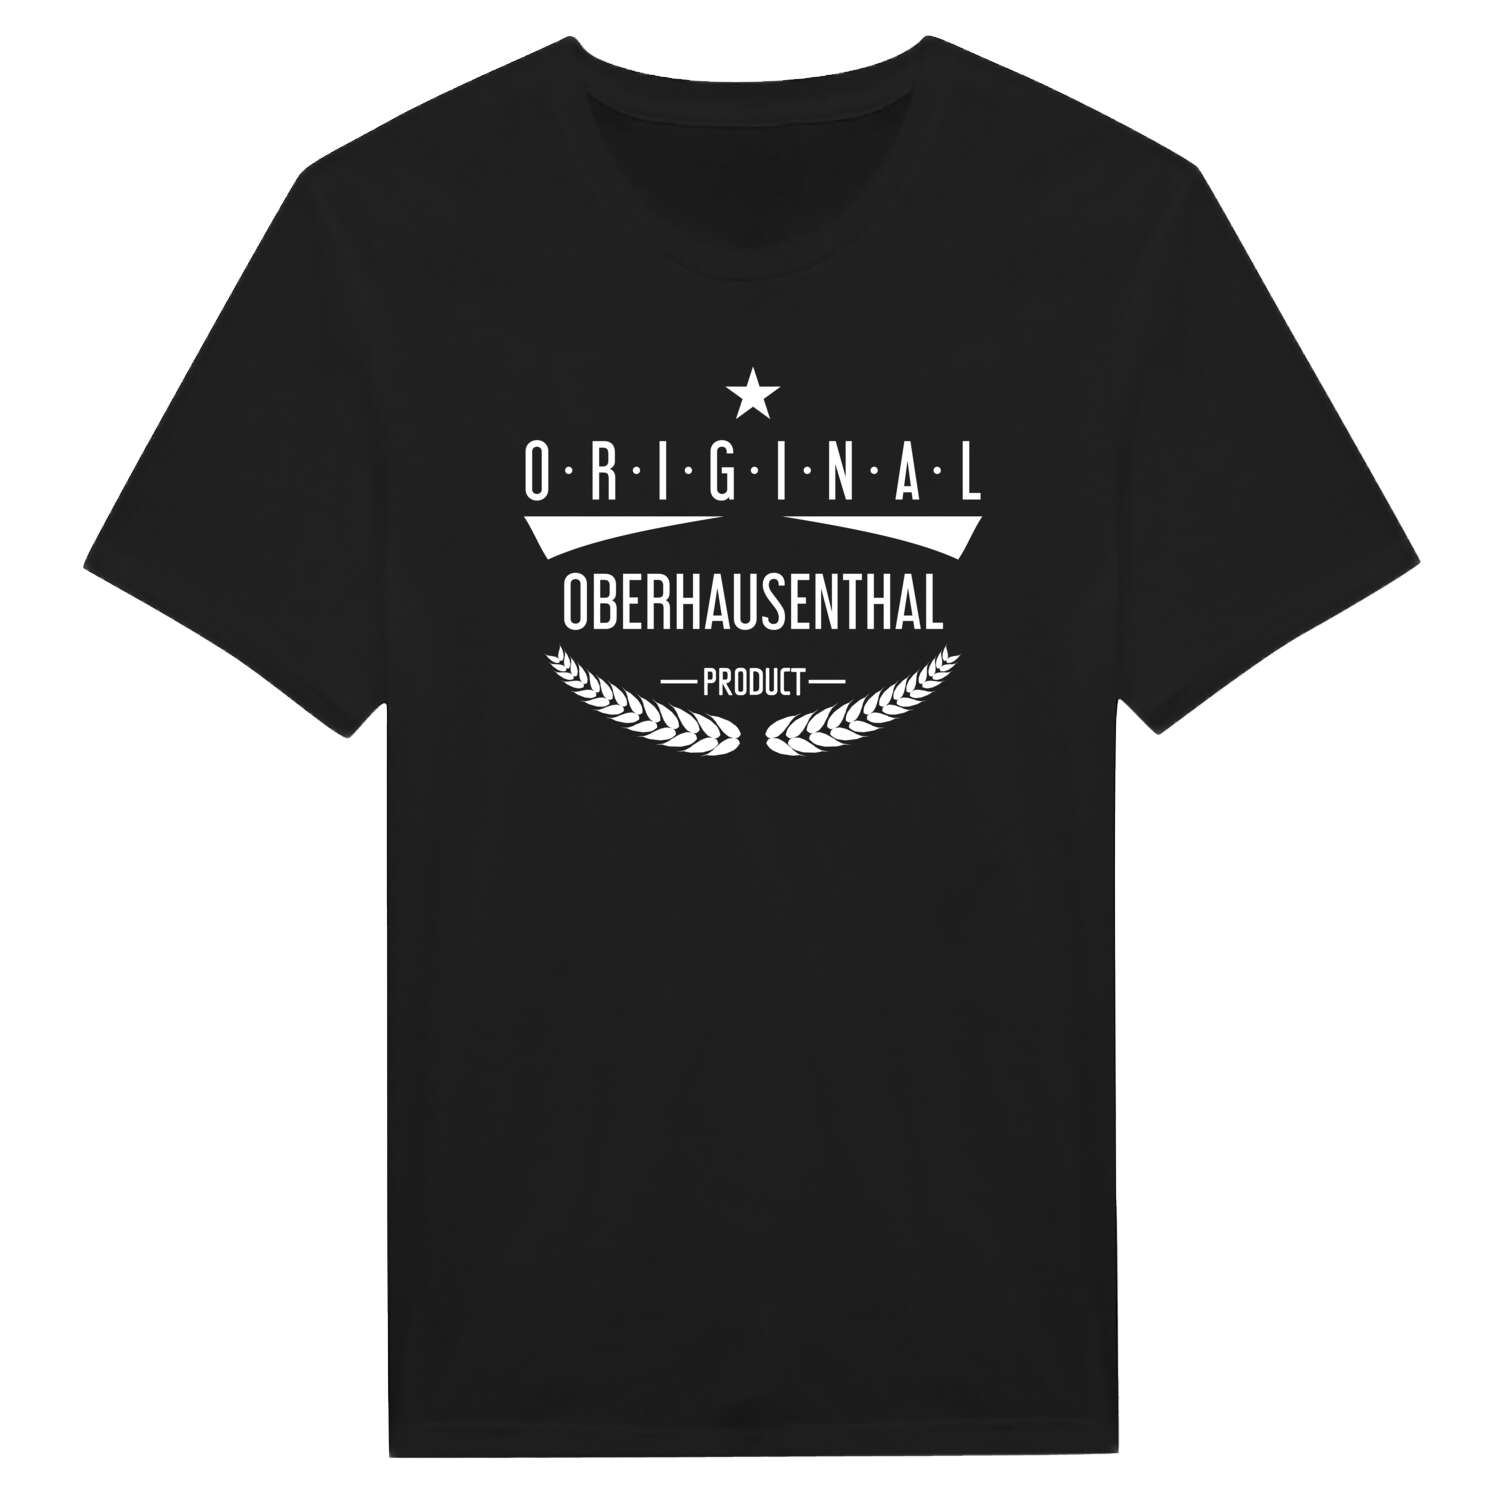 Oberhausenthal T-Shirt »Original Product«